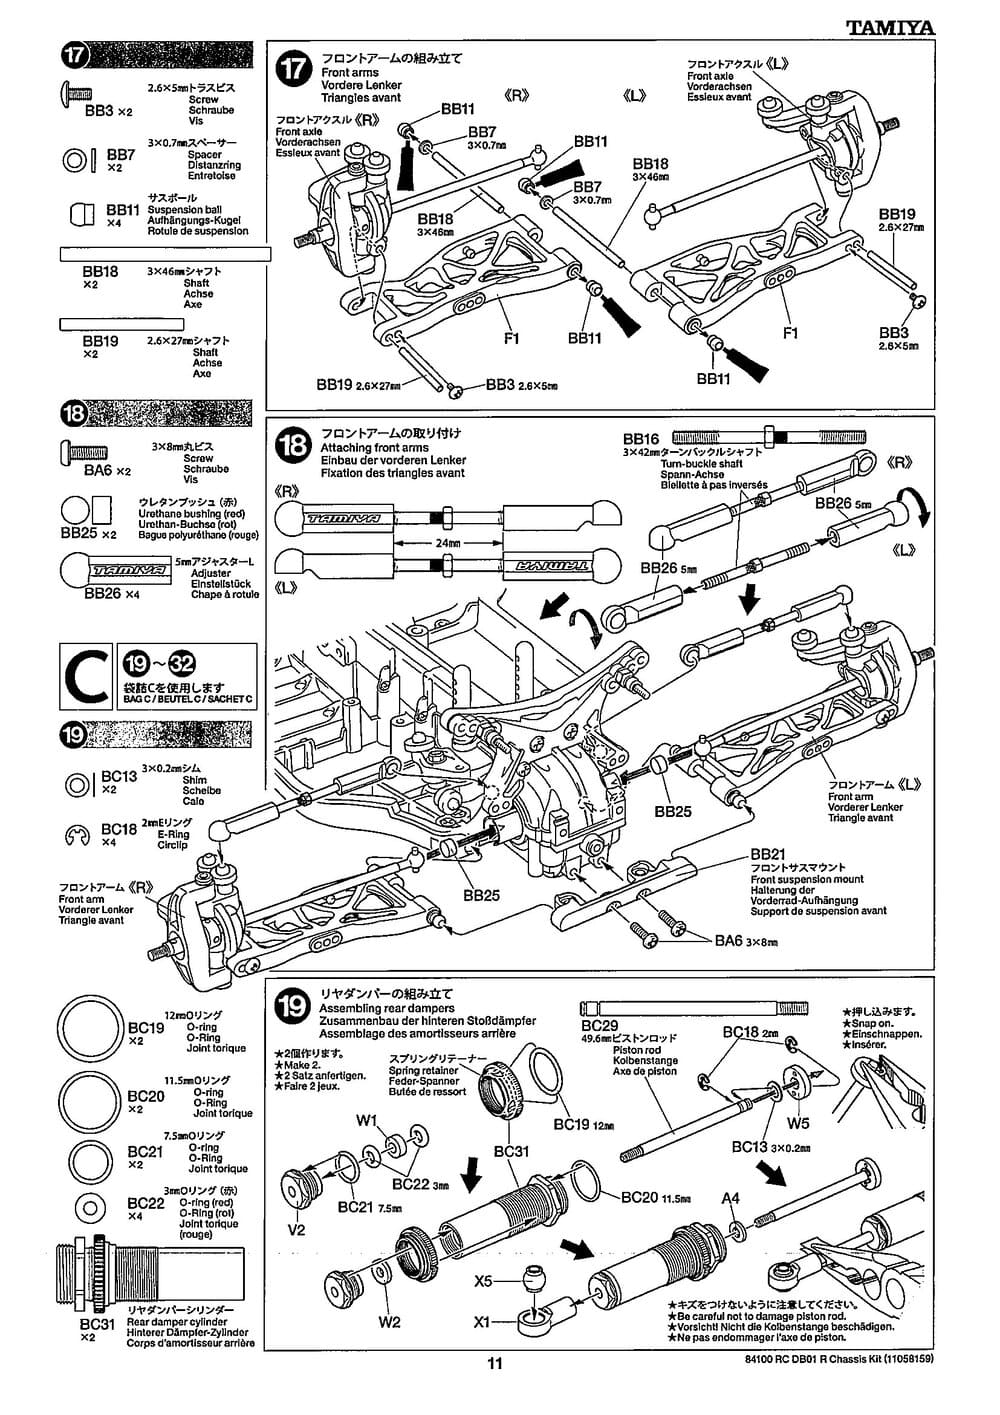 Tamiya - DB-01R Chassis - Manual - Page 11